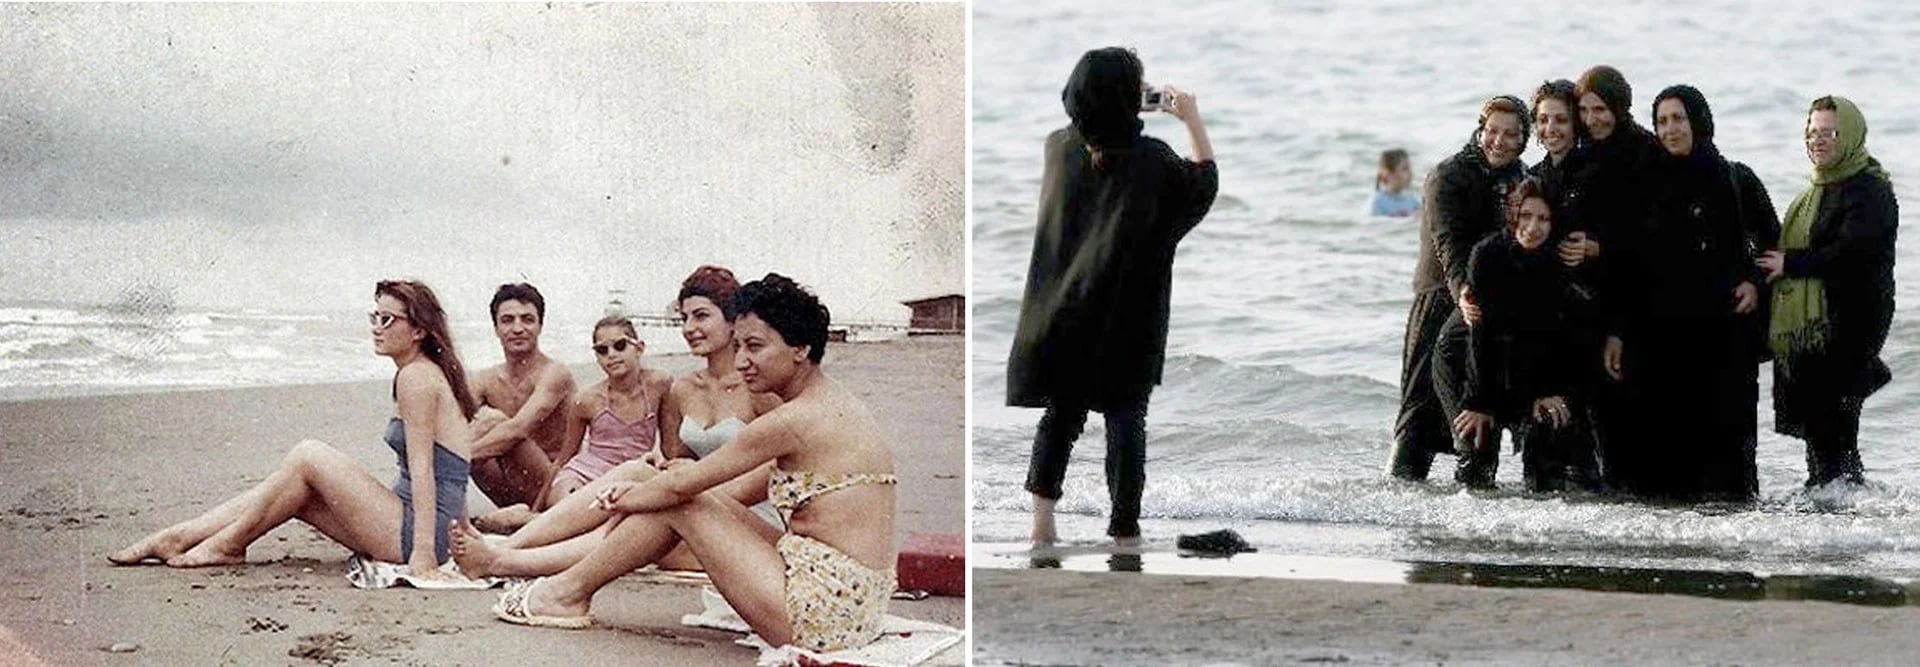 Mujeres iraníes en la playa, antes y después de la revolución